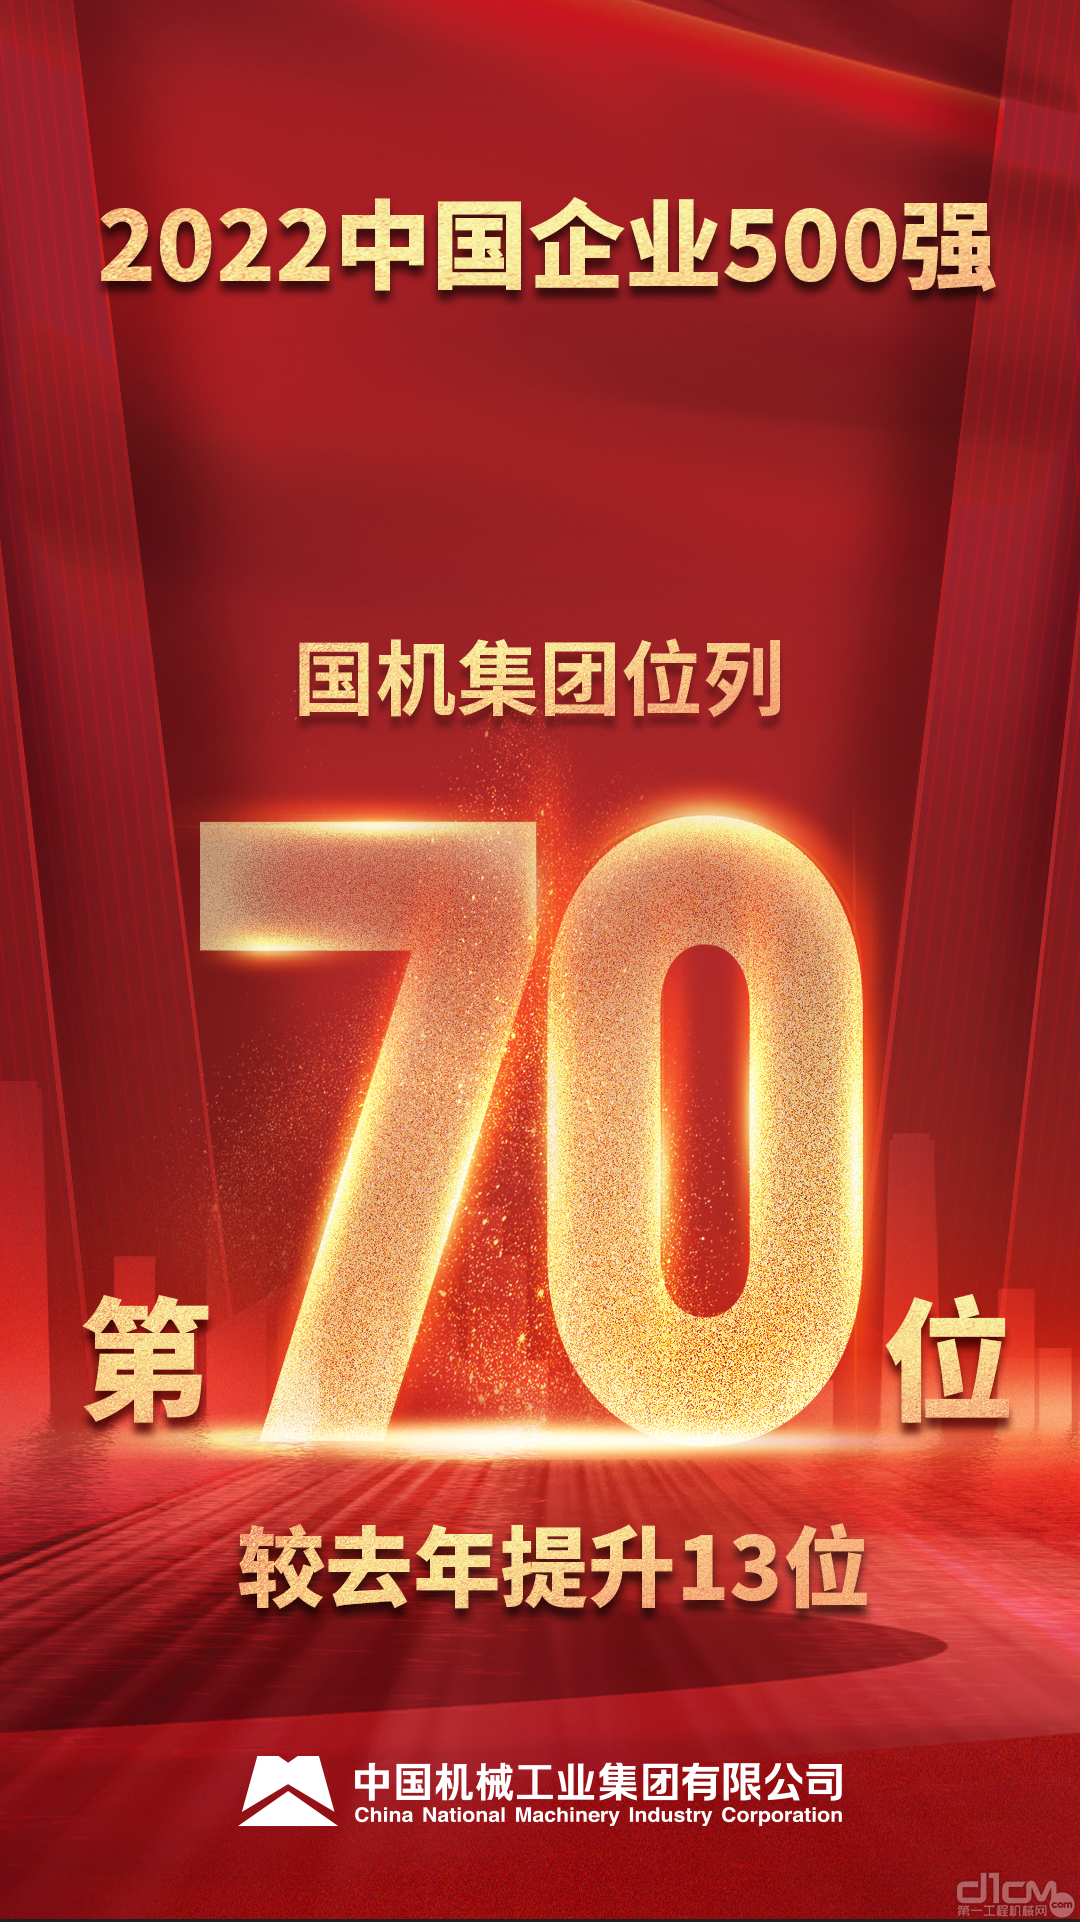 国机集团位列2022中国企业500强第70位